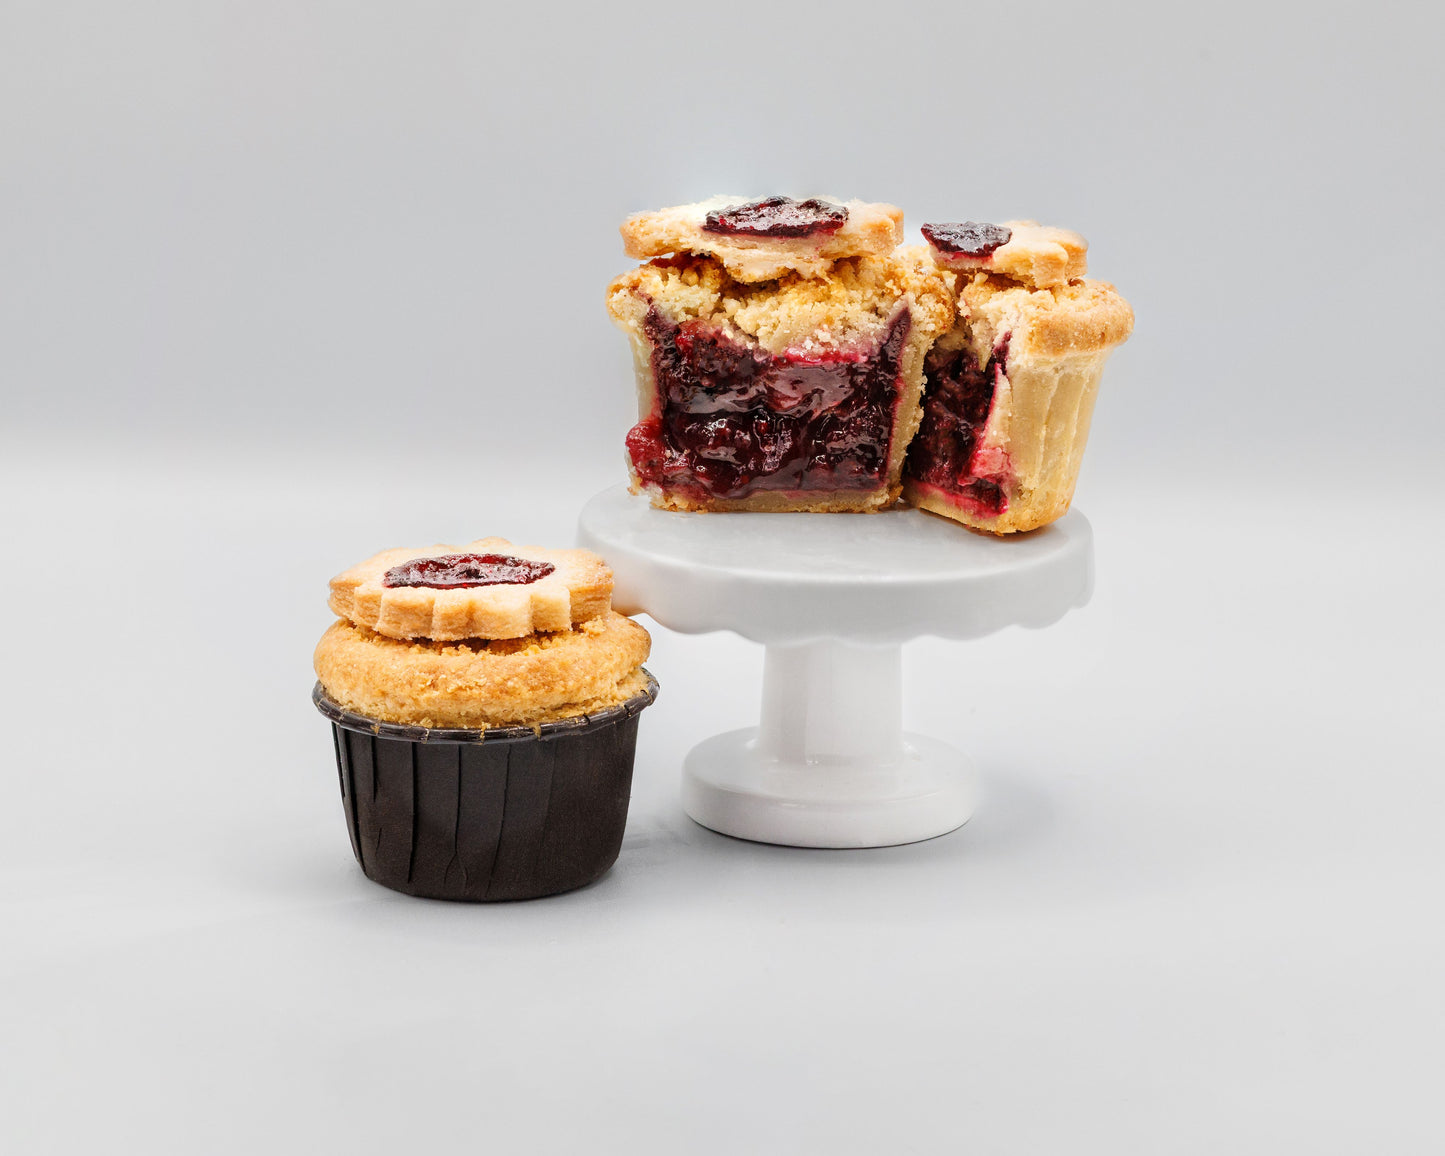 6-Pie Jelly Jar Gift Bundle - Spring Menu - Pasadena